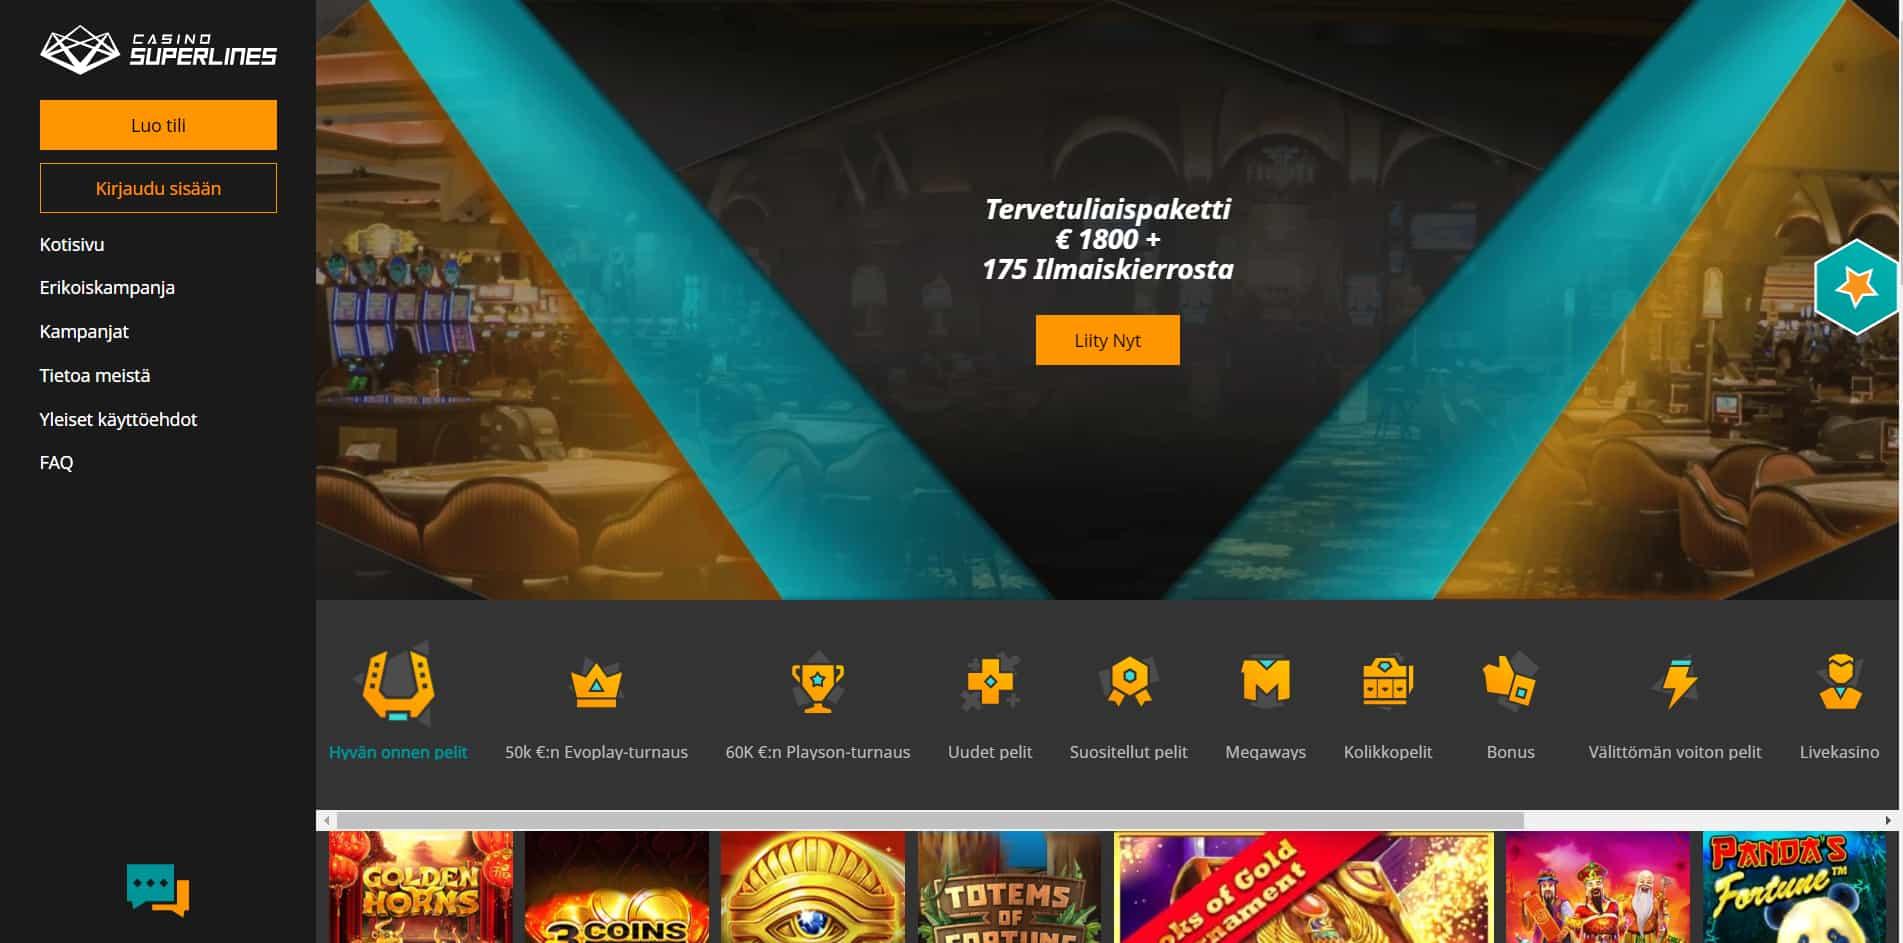 Casino Superlines casino homepage